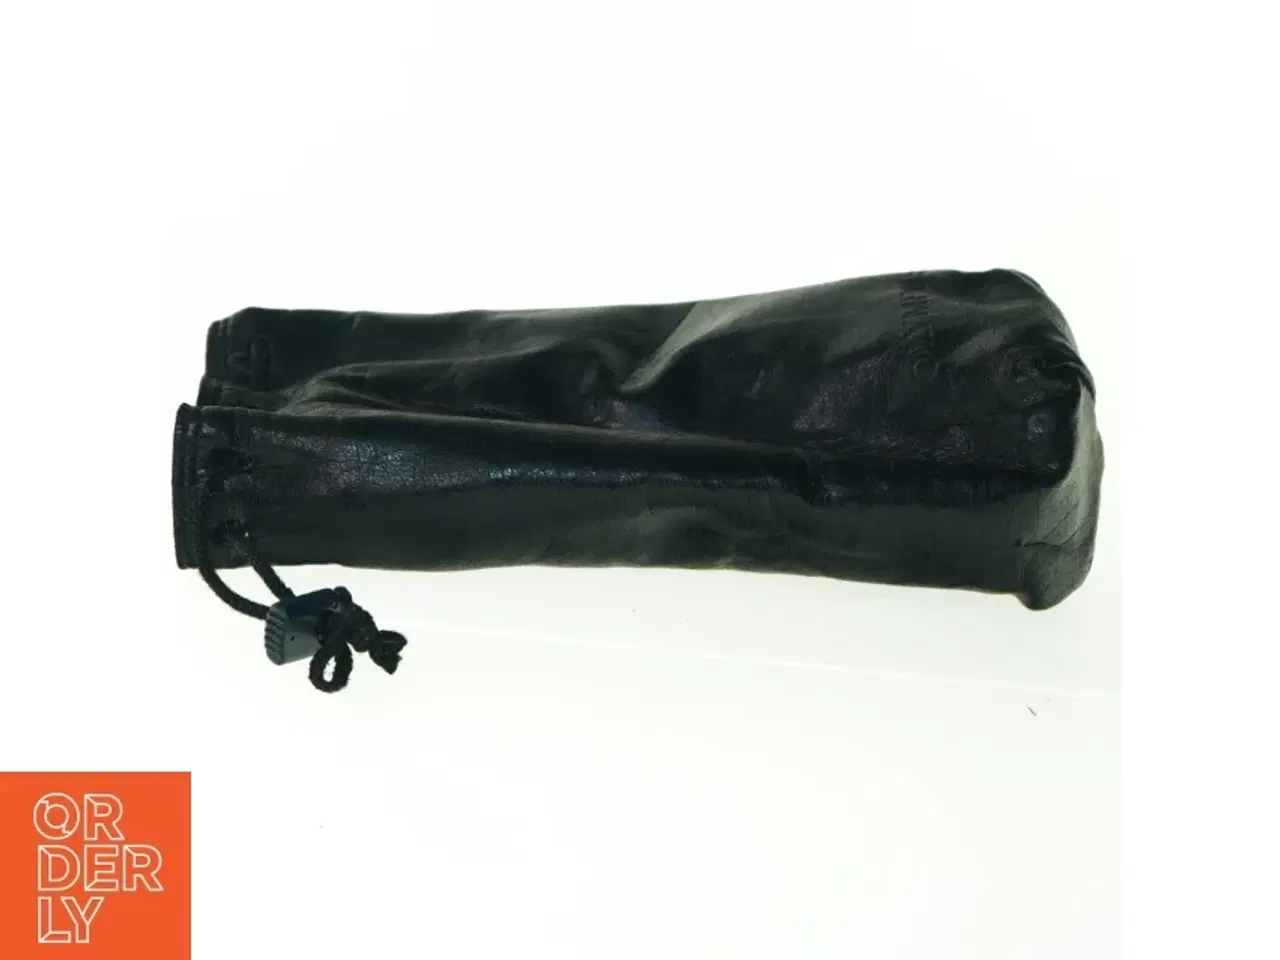 Billede 2 - Læder kamera objektiv linse etui taske fra Olympus (str. 21 x 10 cm)